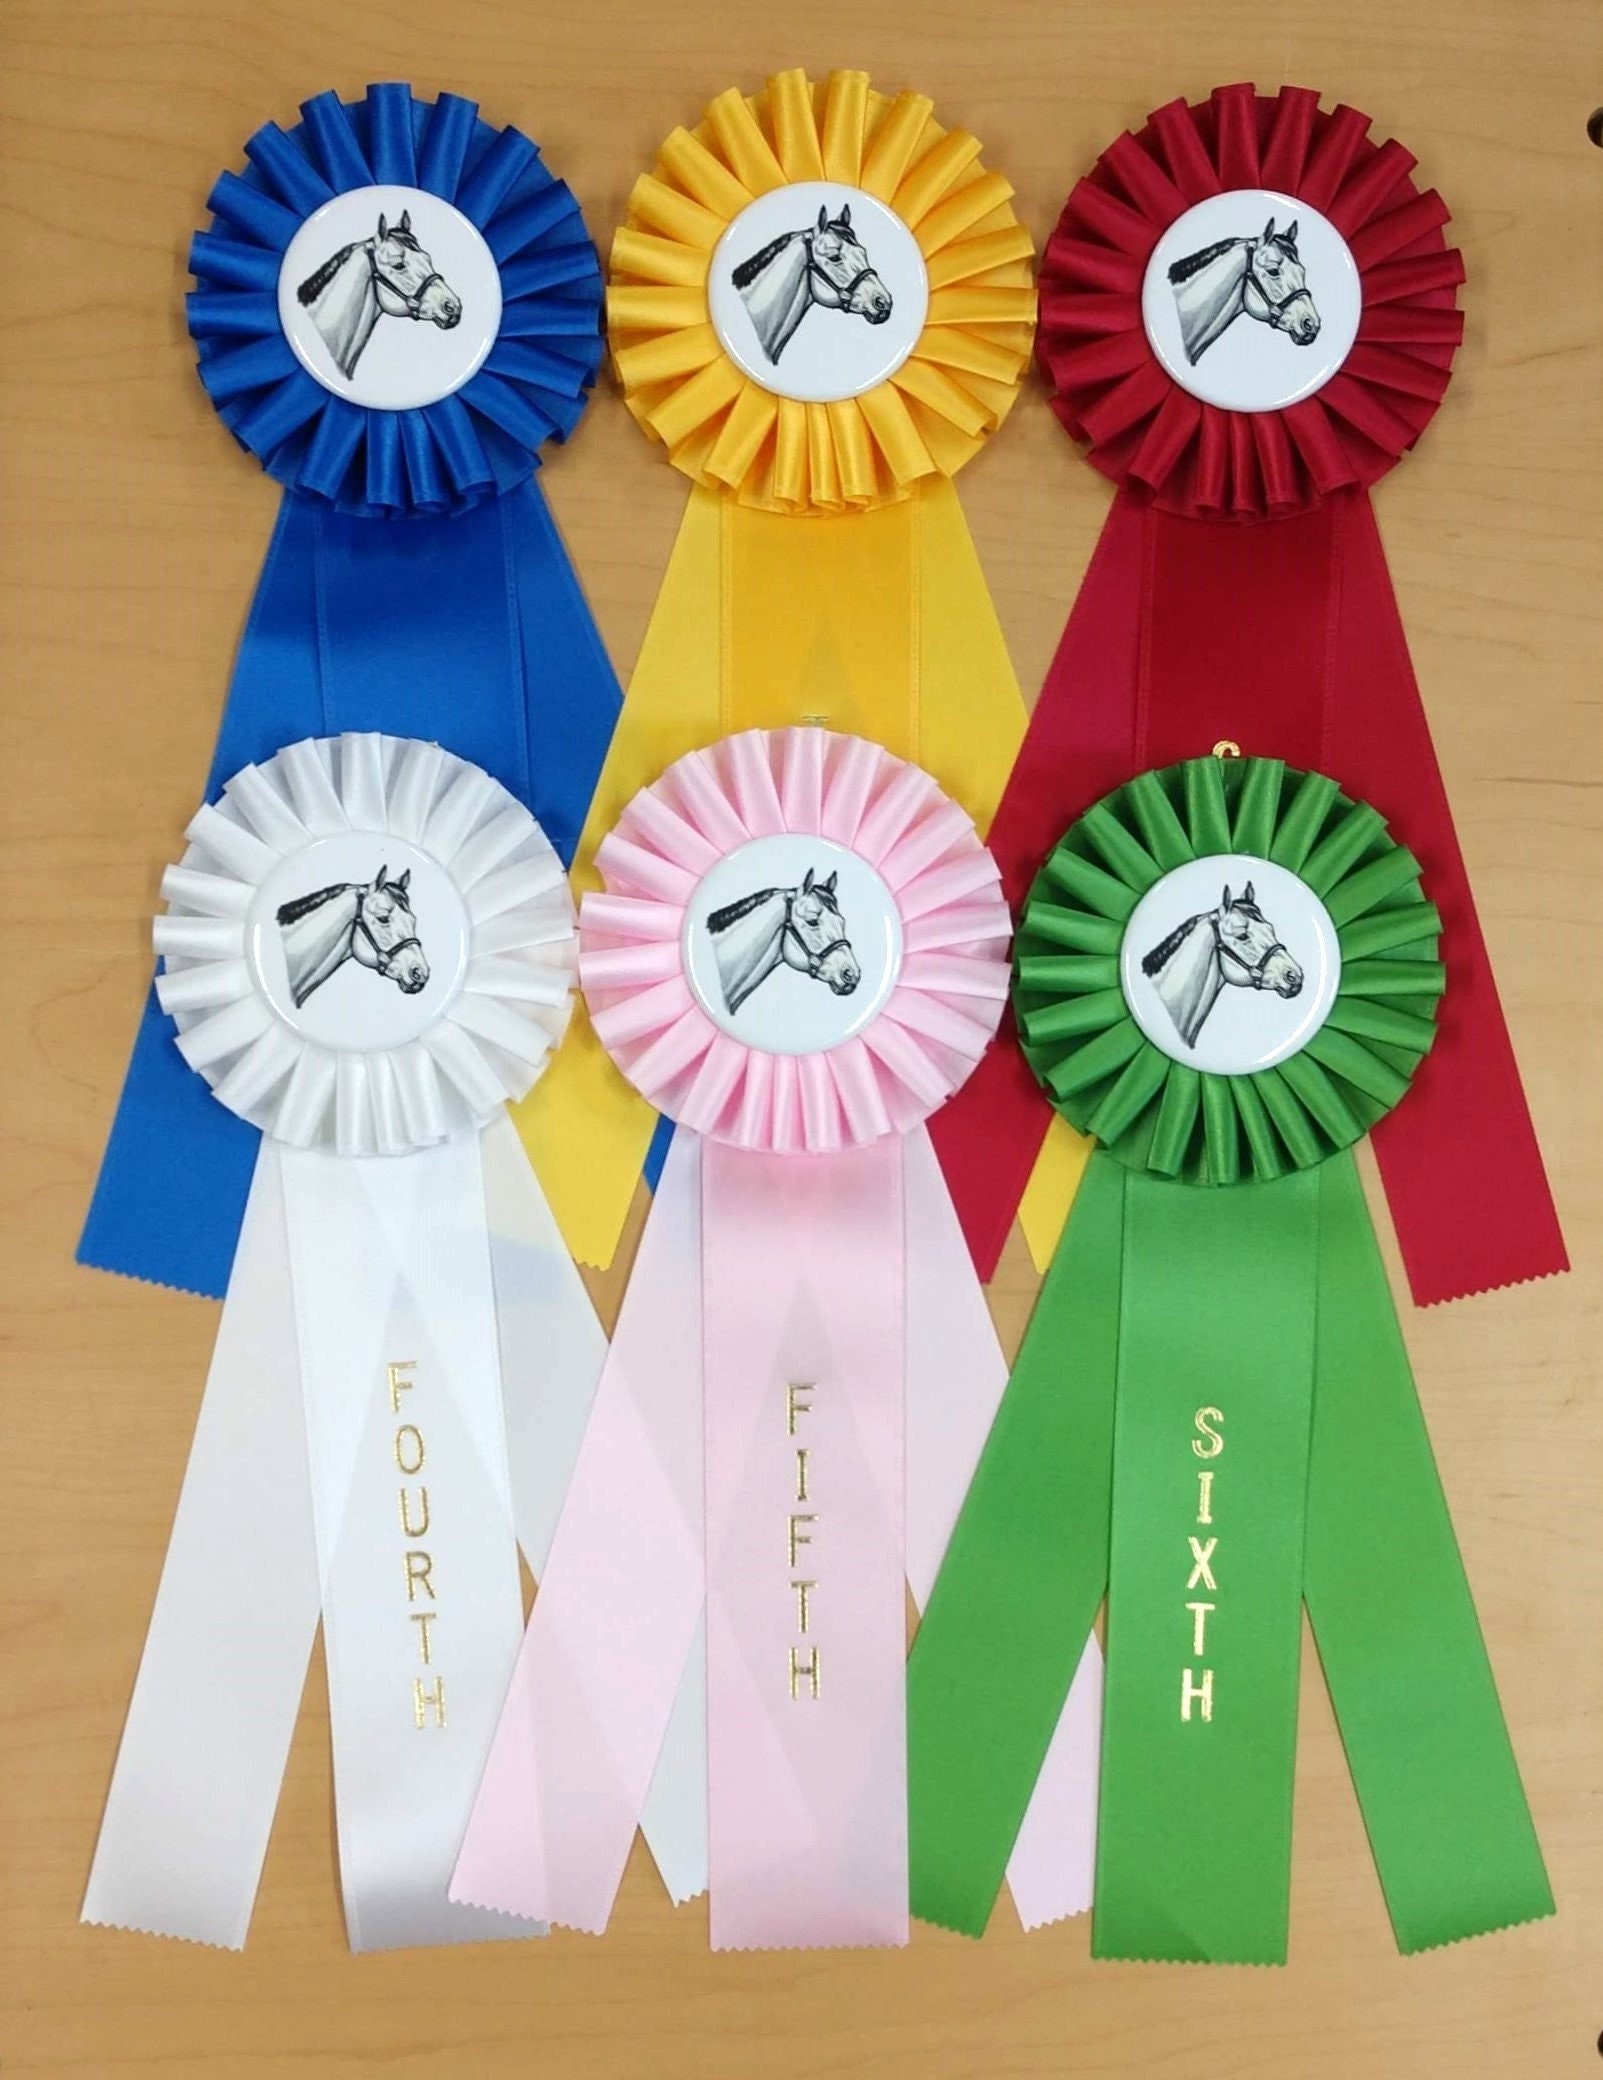 Quick Ship Horse Show Champion Rosette Ribbon - McLaughlin Ribbon Awards